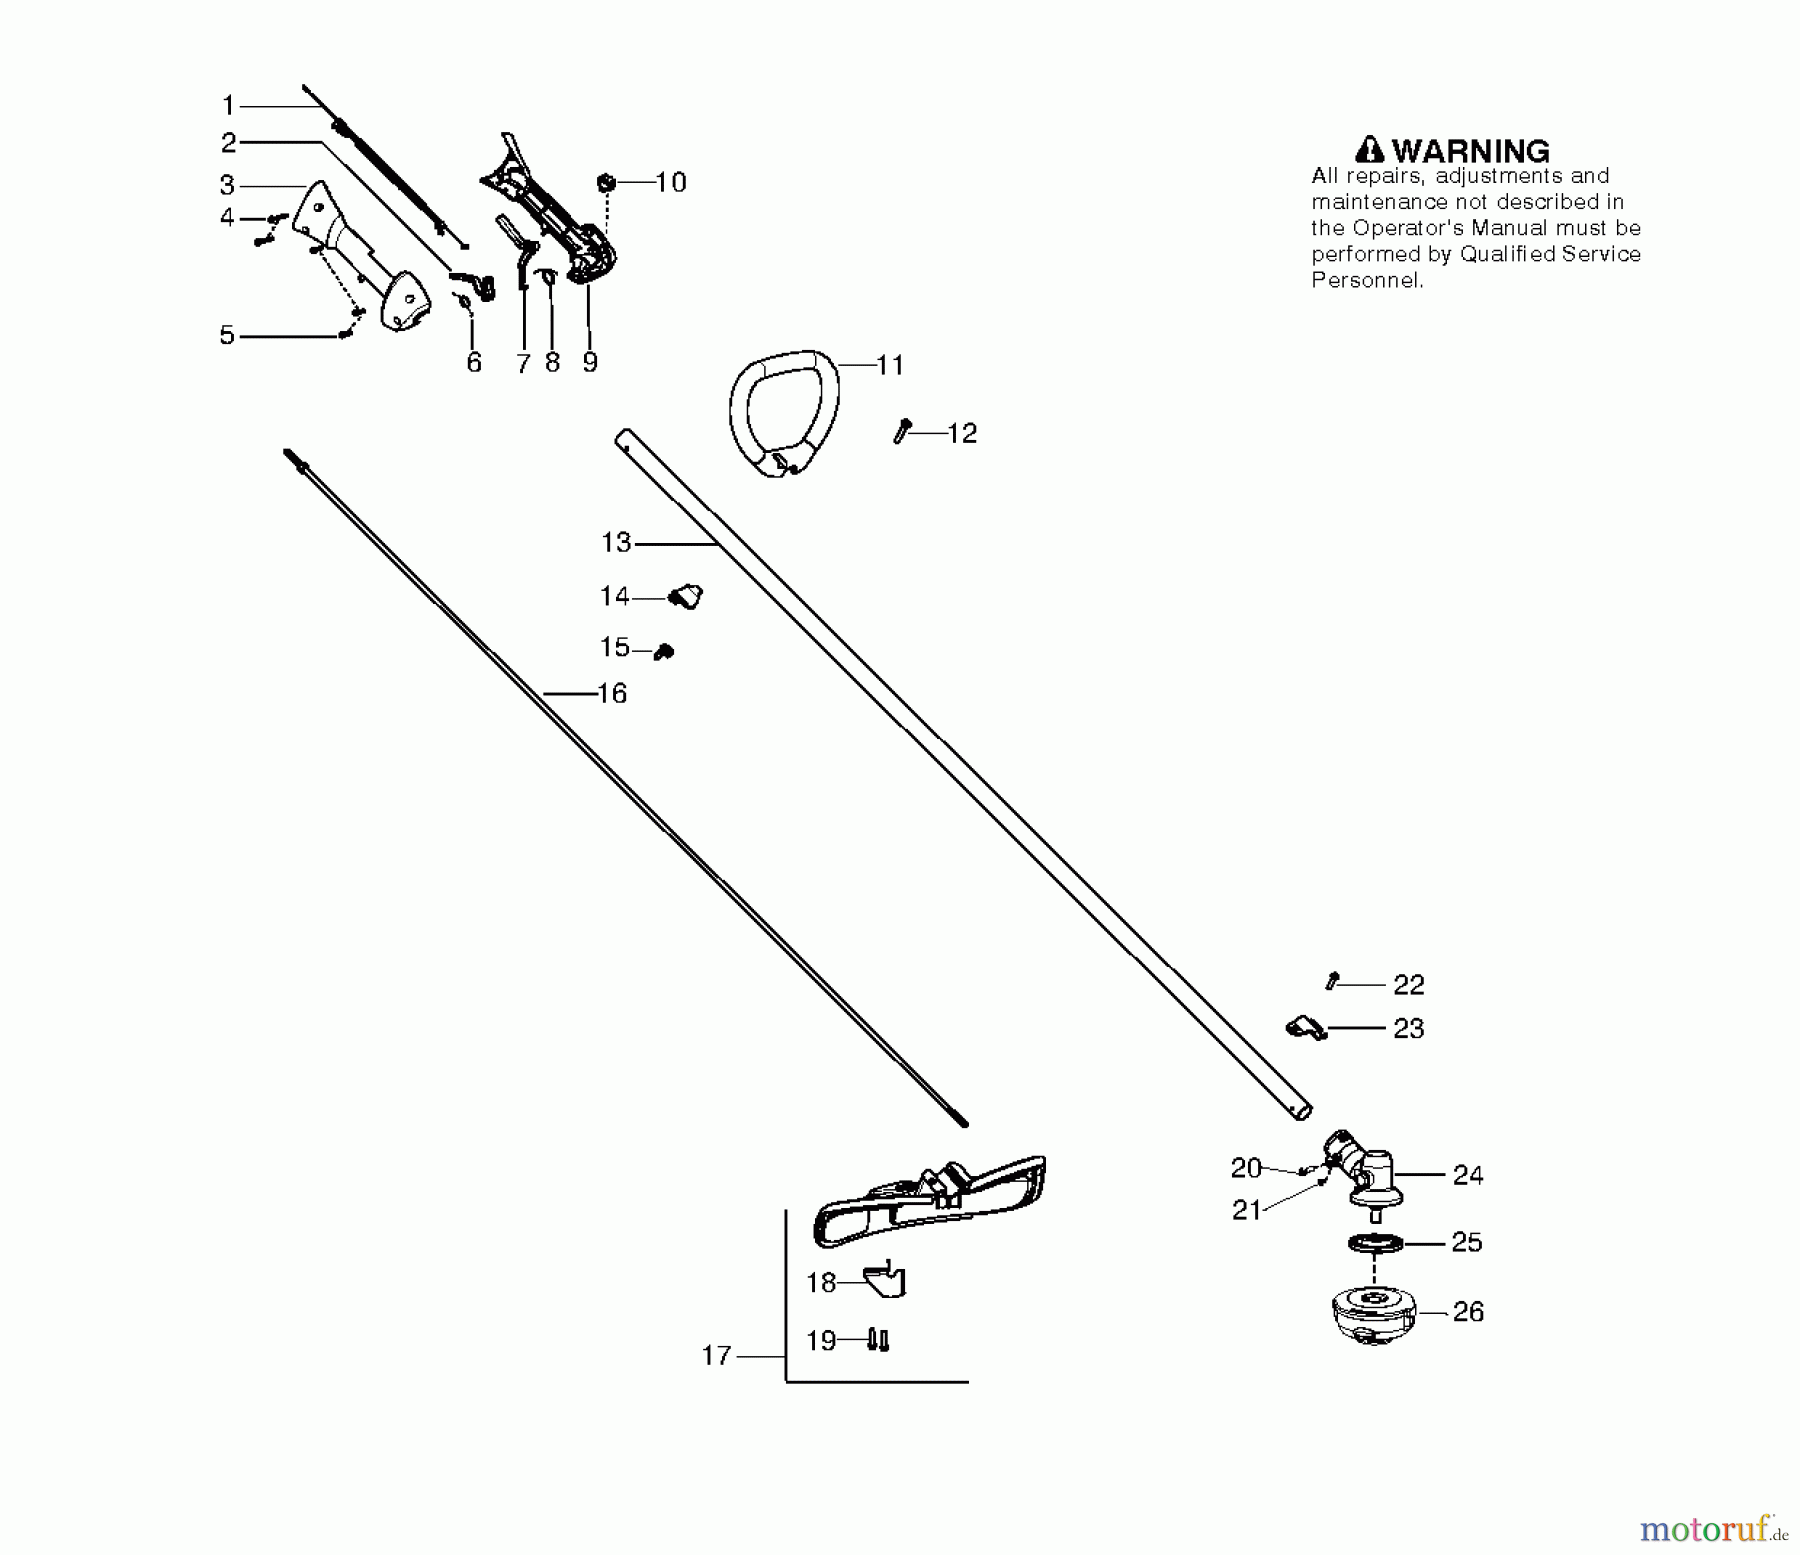  Jonsered Motorsensen, Trimmer GC2126 - Jonsered String/Brush Trimmer (2009-09) SHAFT HANDLE